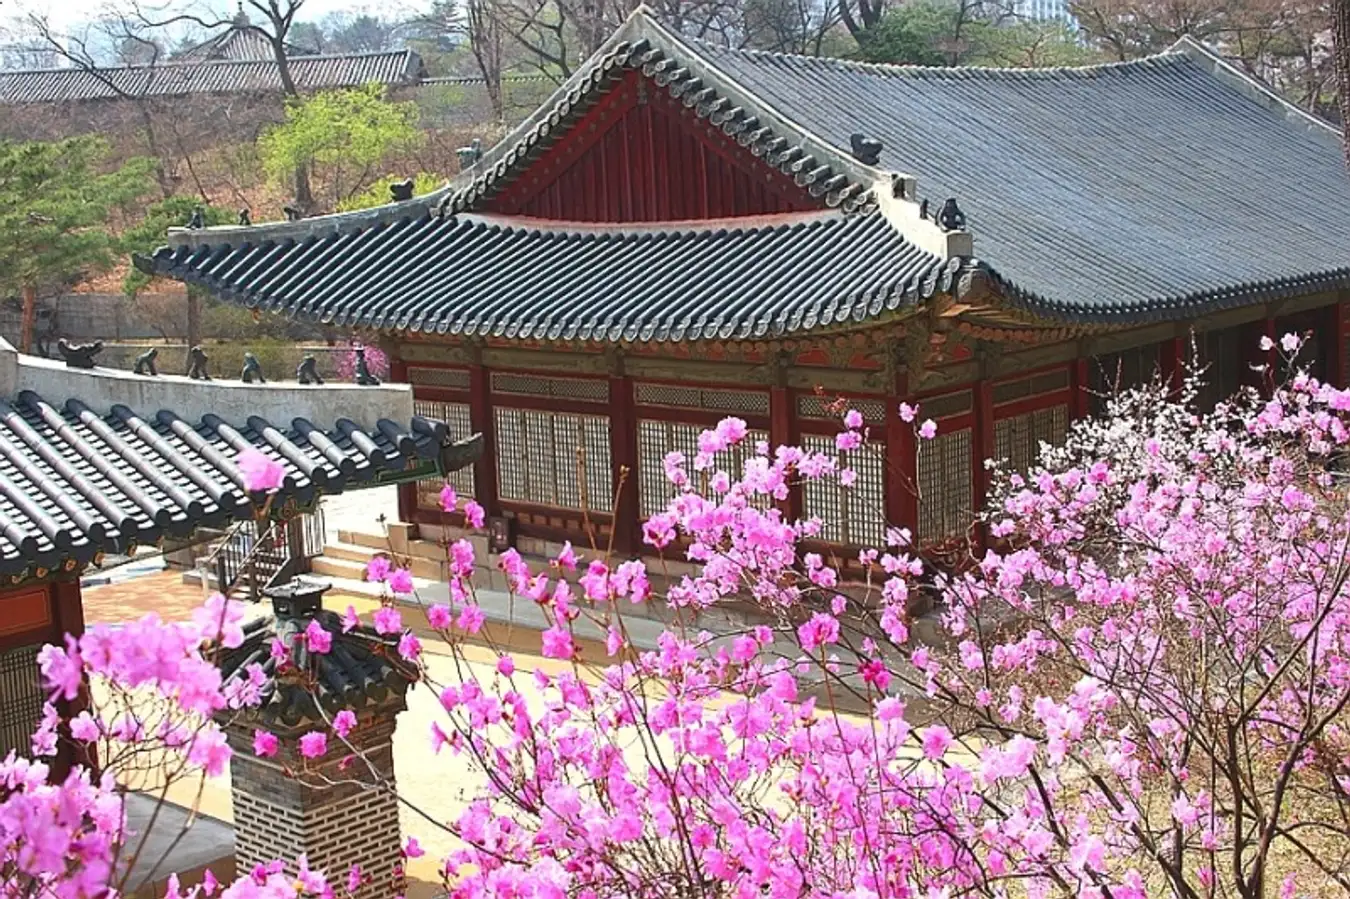 visit seoul in april